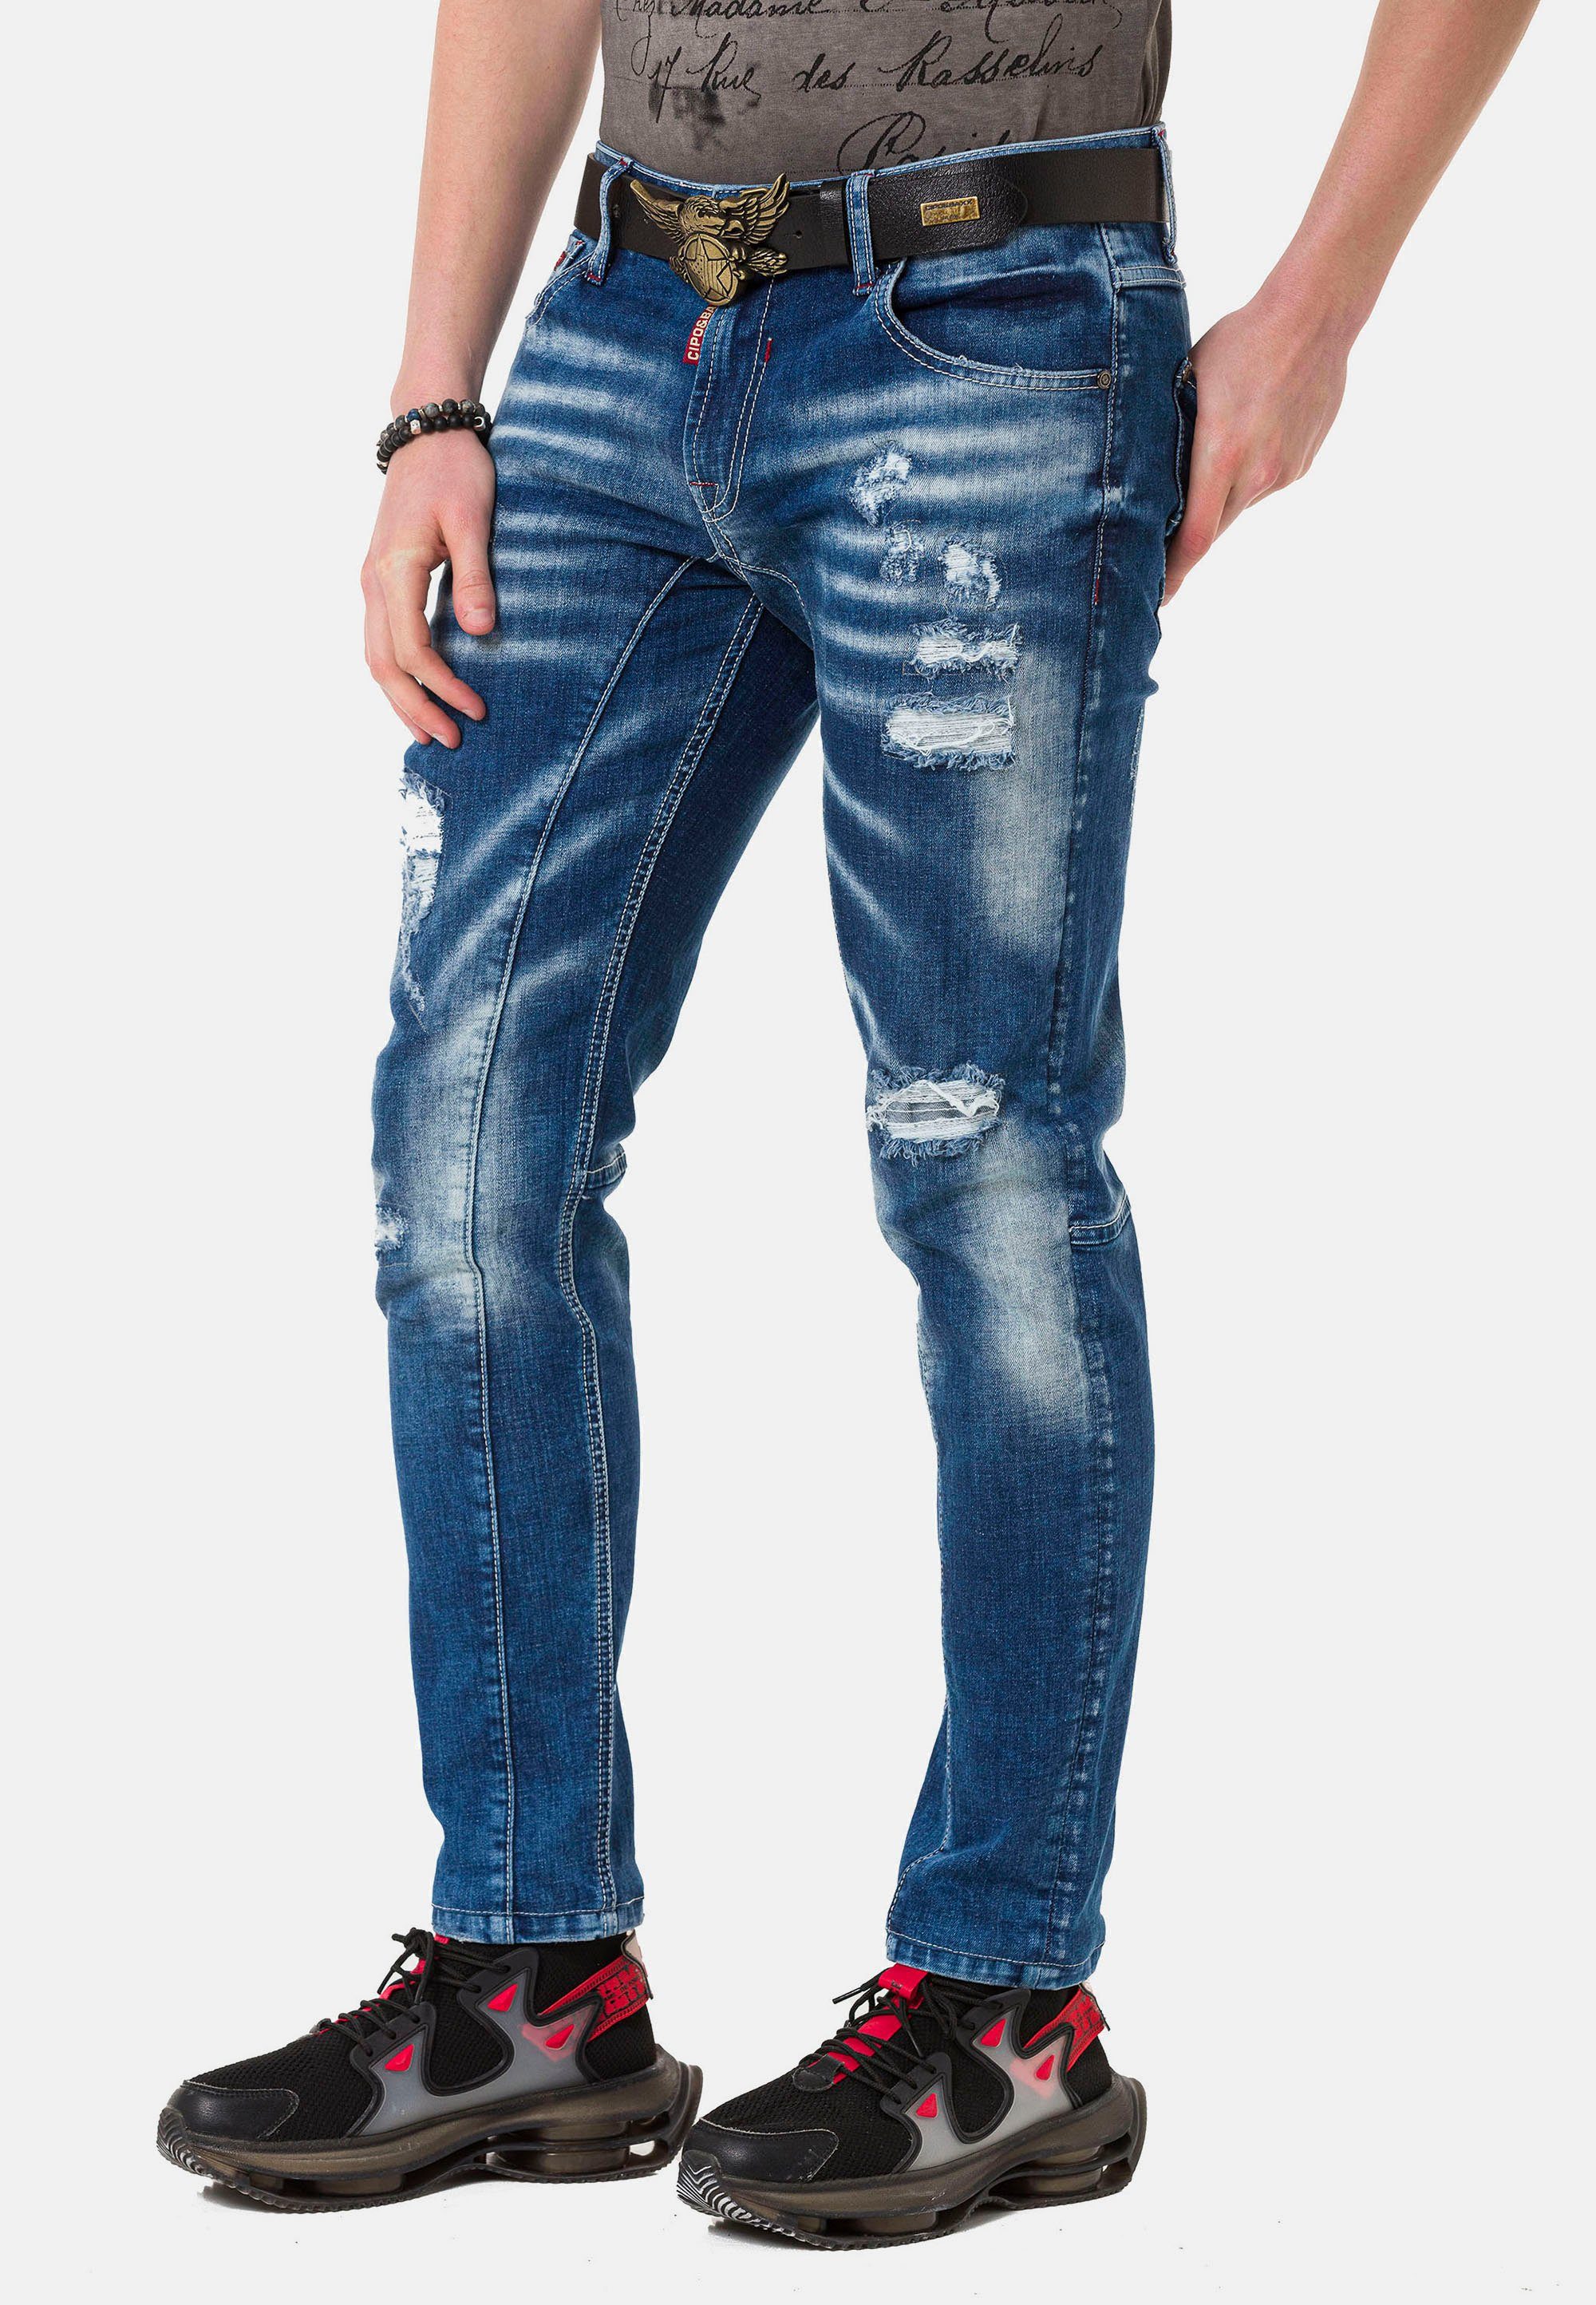 Cipo & Baxx Straight-Jeans in Destroyed-Look modischem